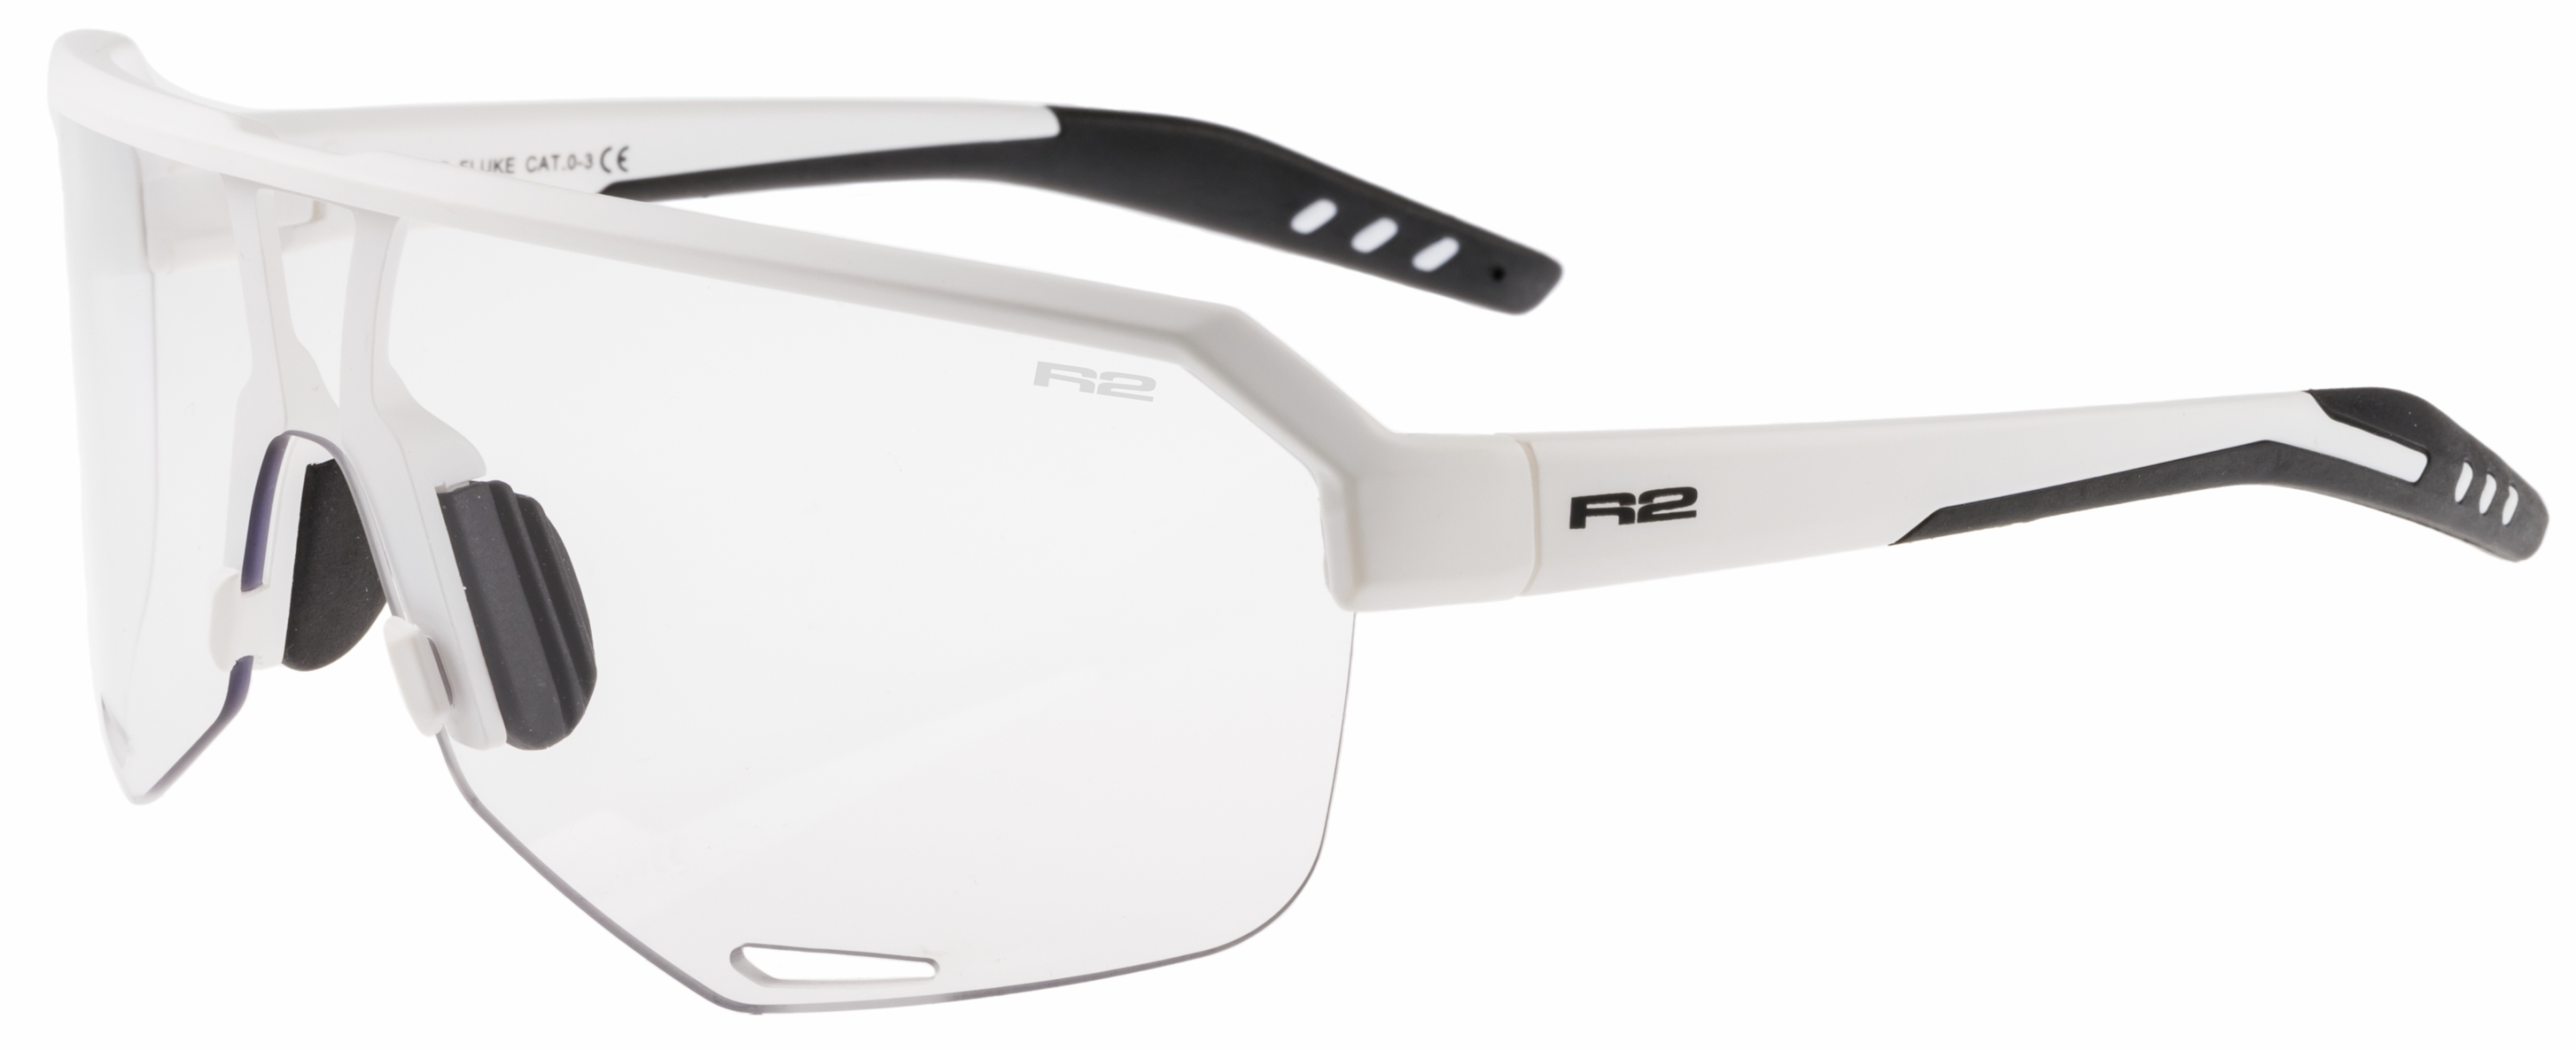 Photochromatic sunglasses  R2 FLUKE AT100S standard